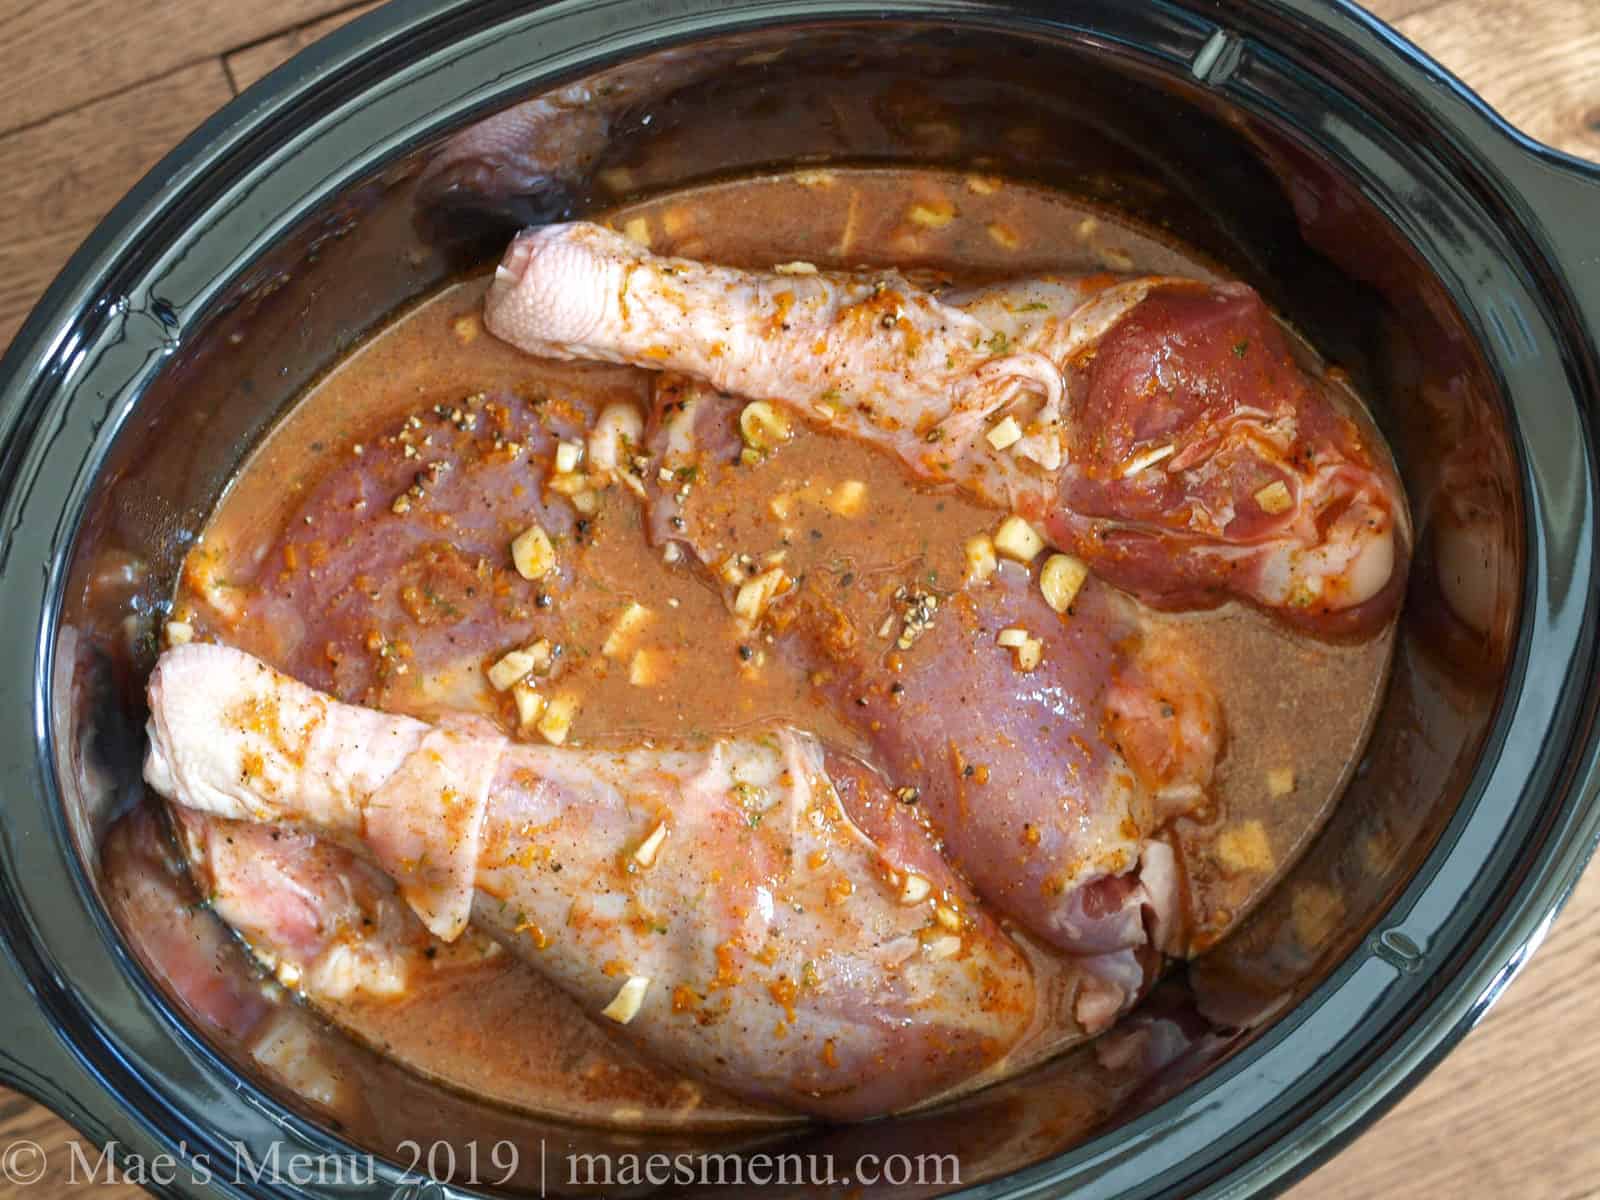 Turkey legs in carnitas seasoning in a slow cooker